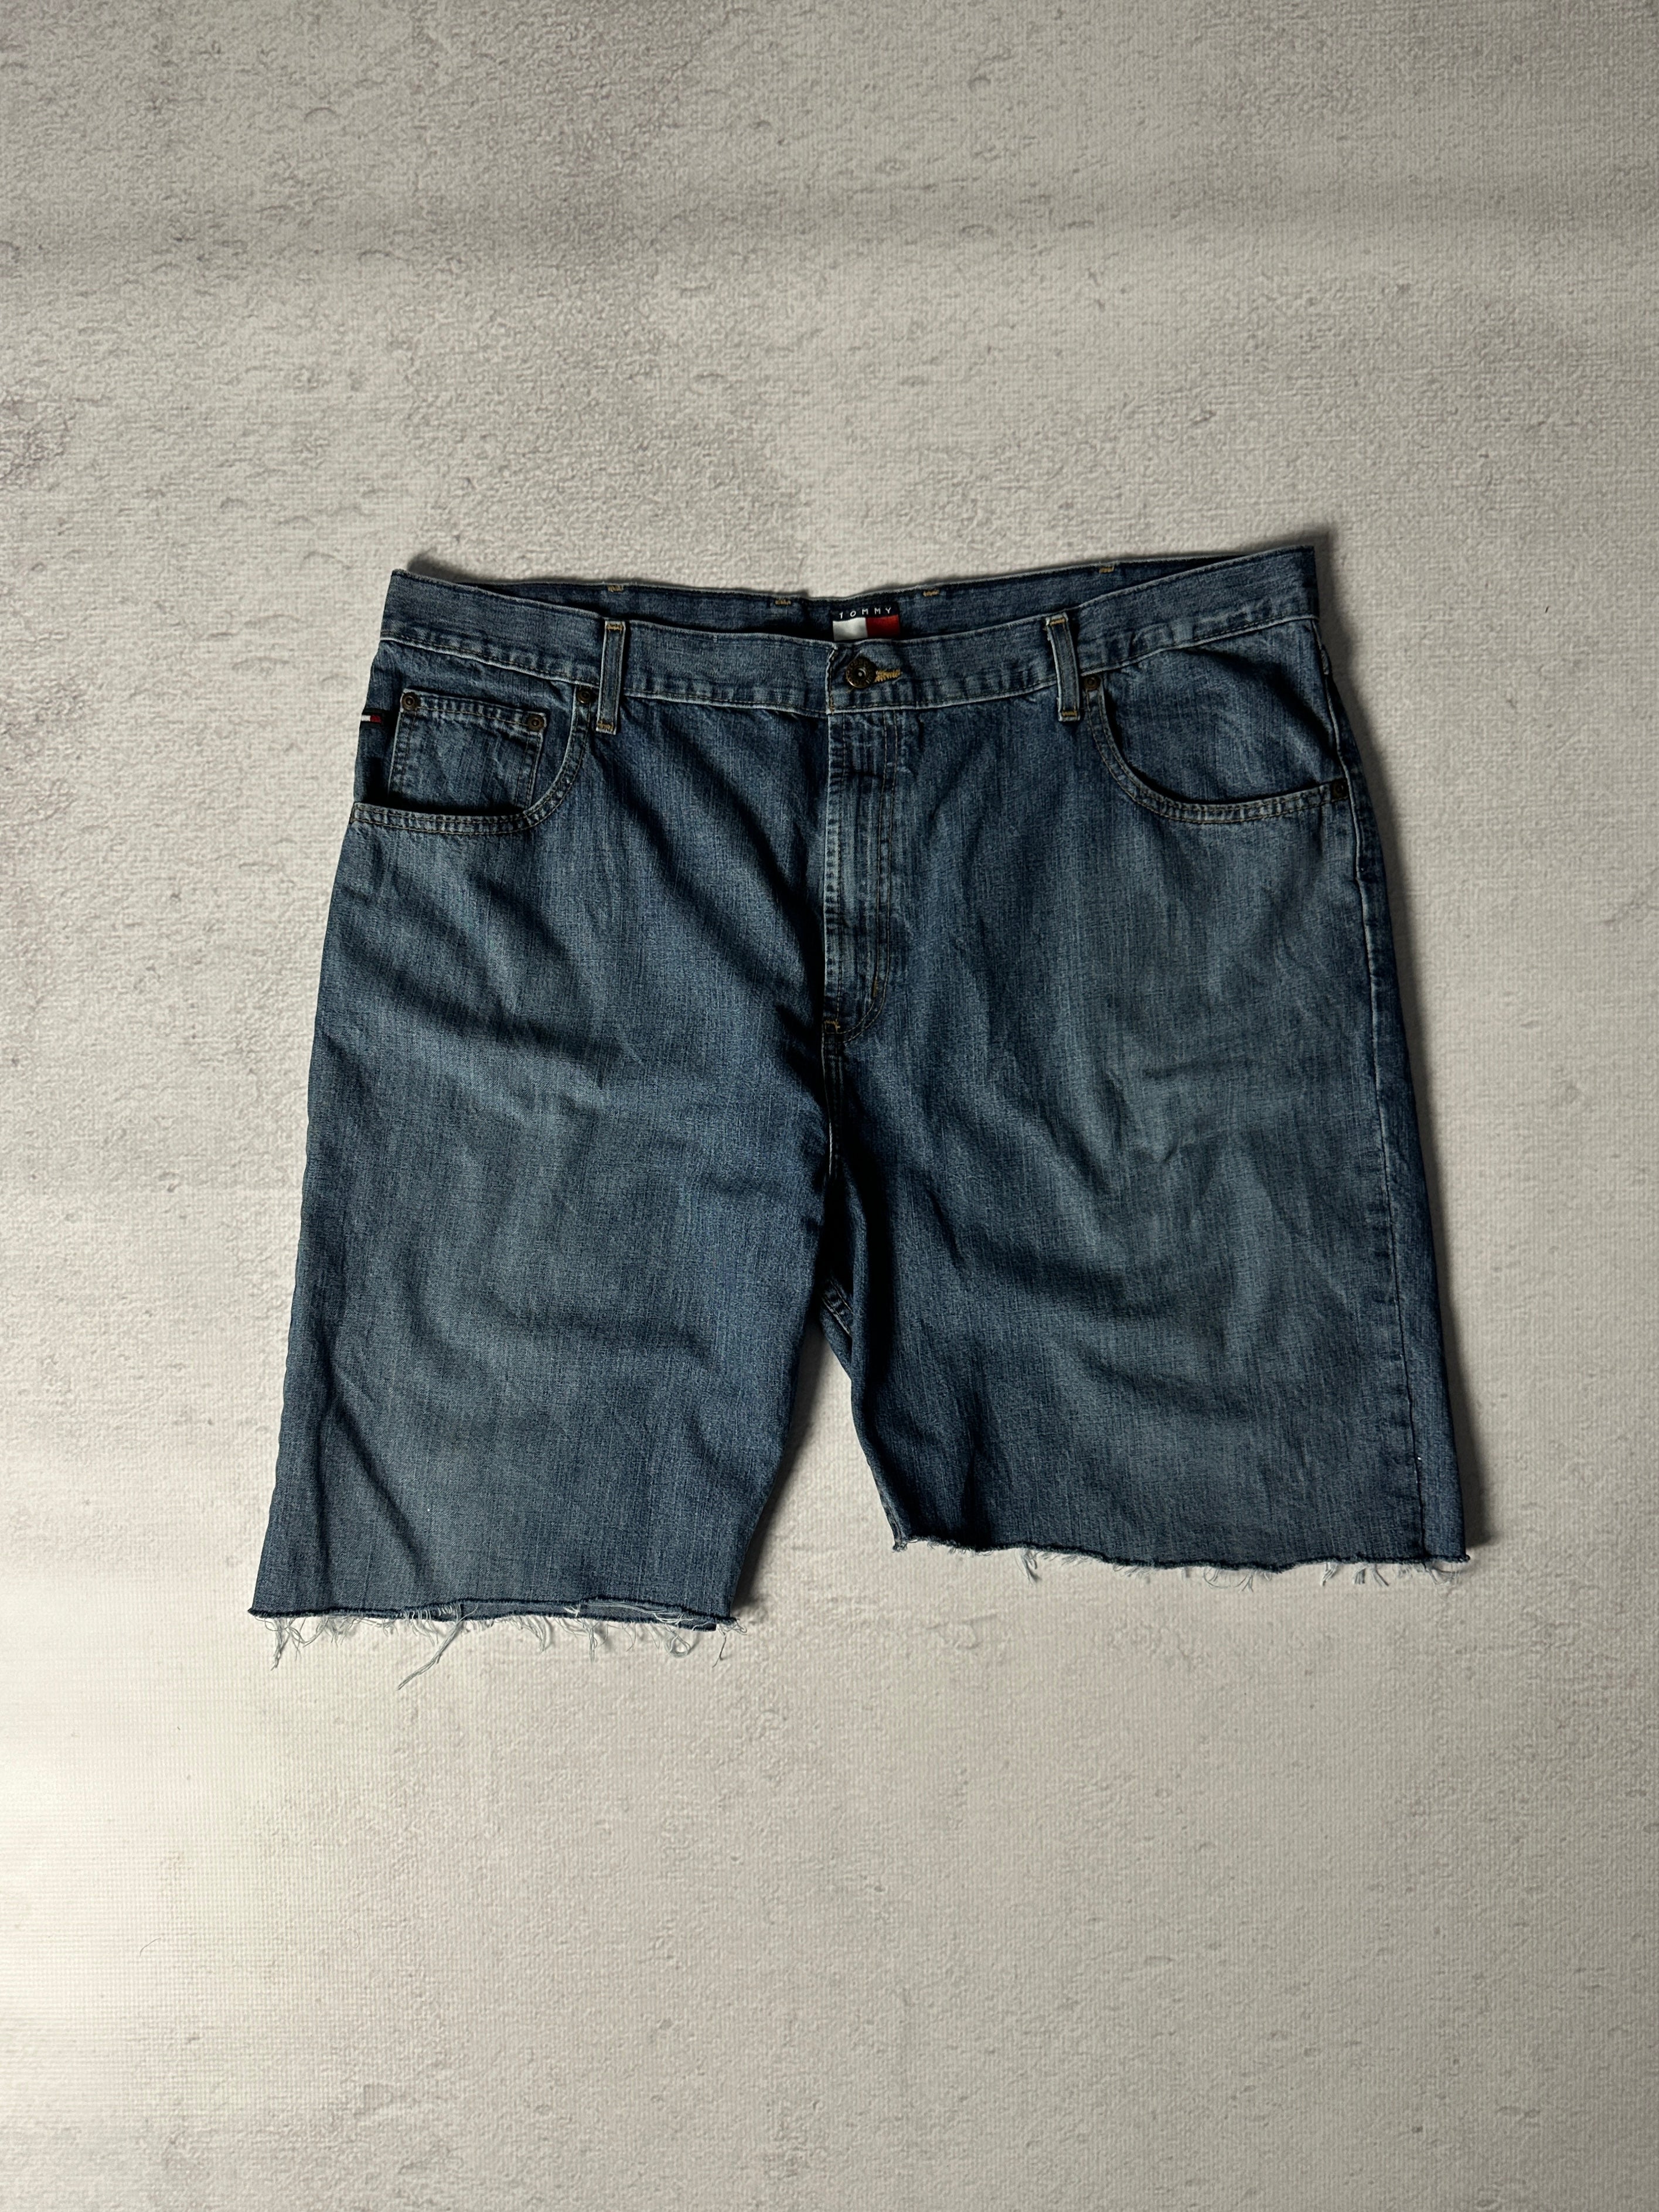 Vintage Tommy Hilfiger Denim Shorts - Men's 42W